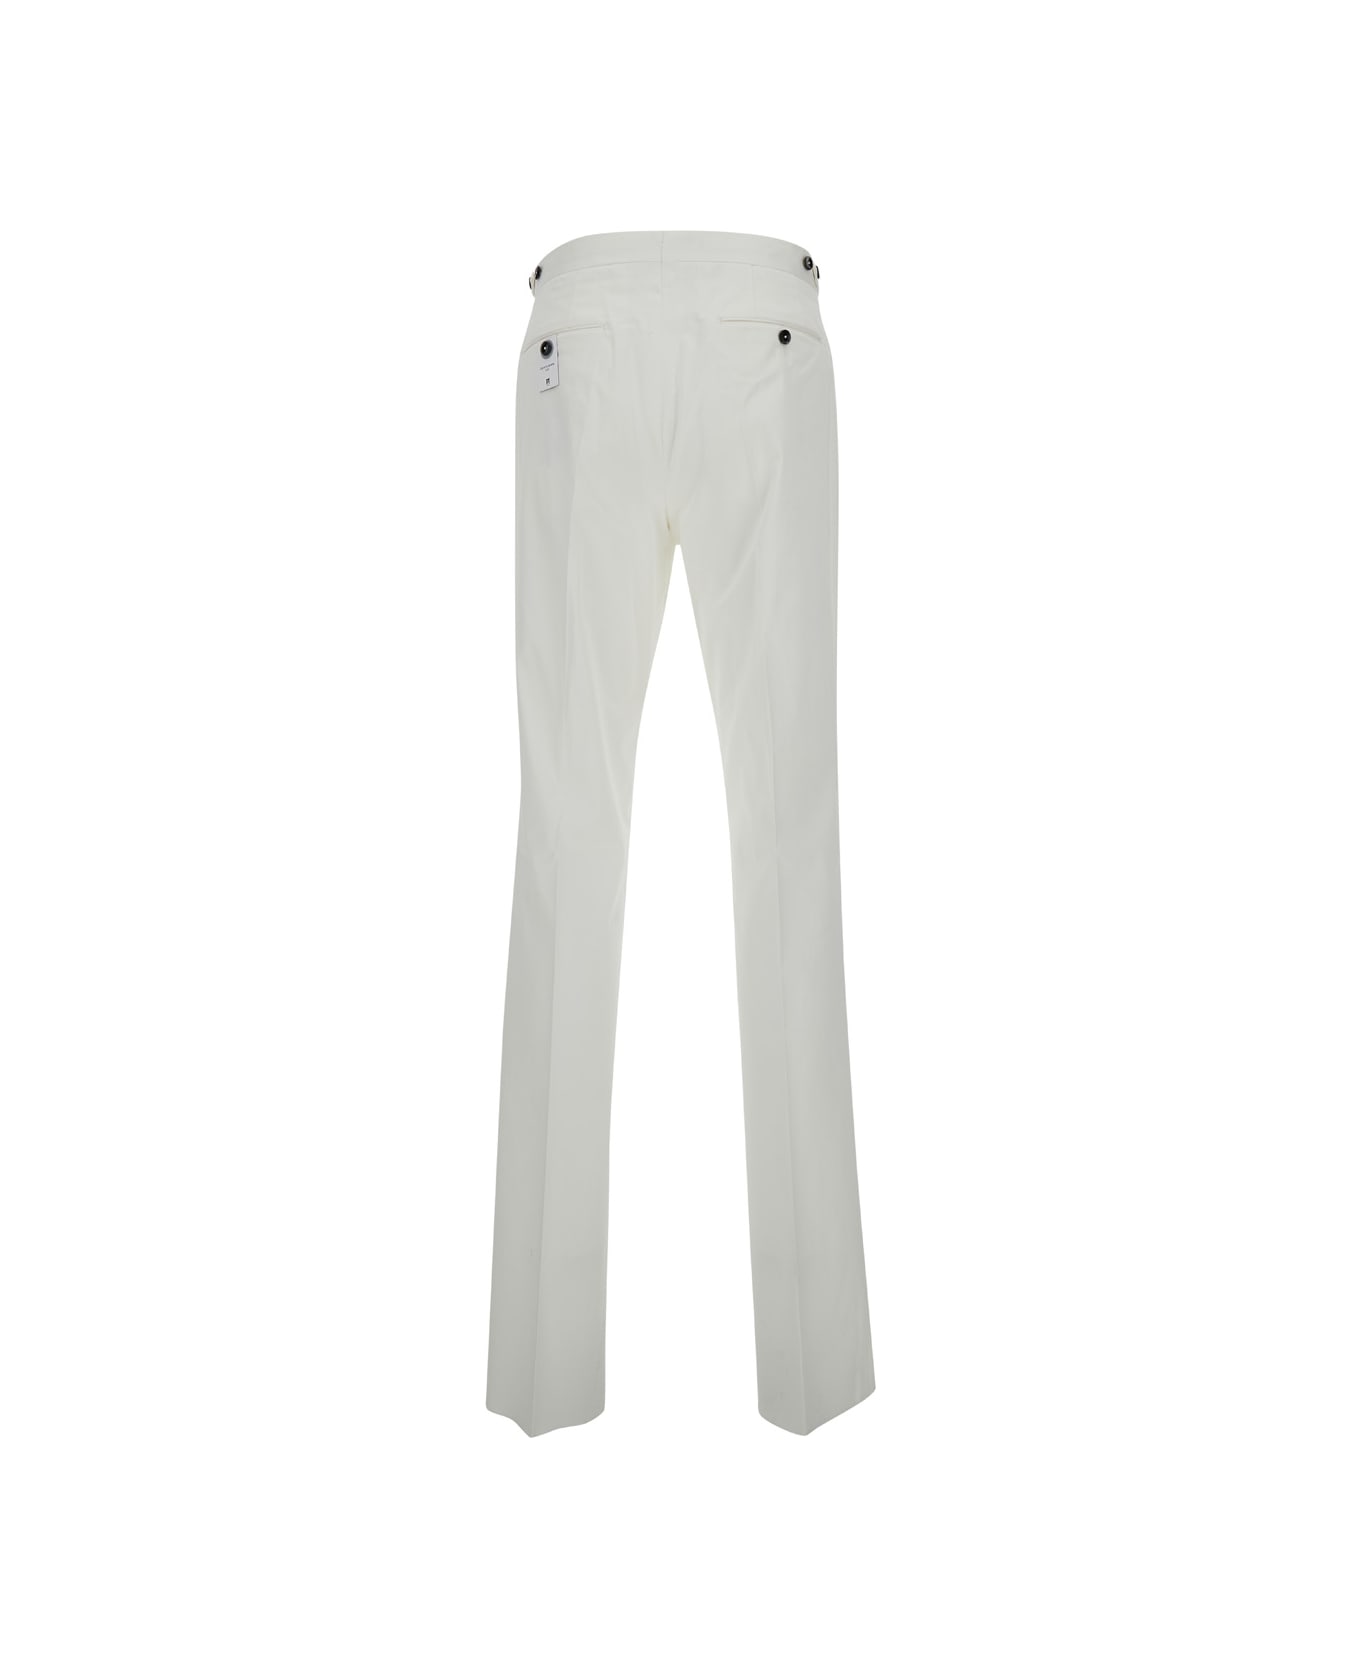 PT Torino White Slim Fit Tailoring Pants In Cotton Blend Man - White ボトムス